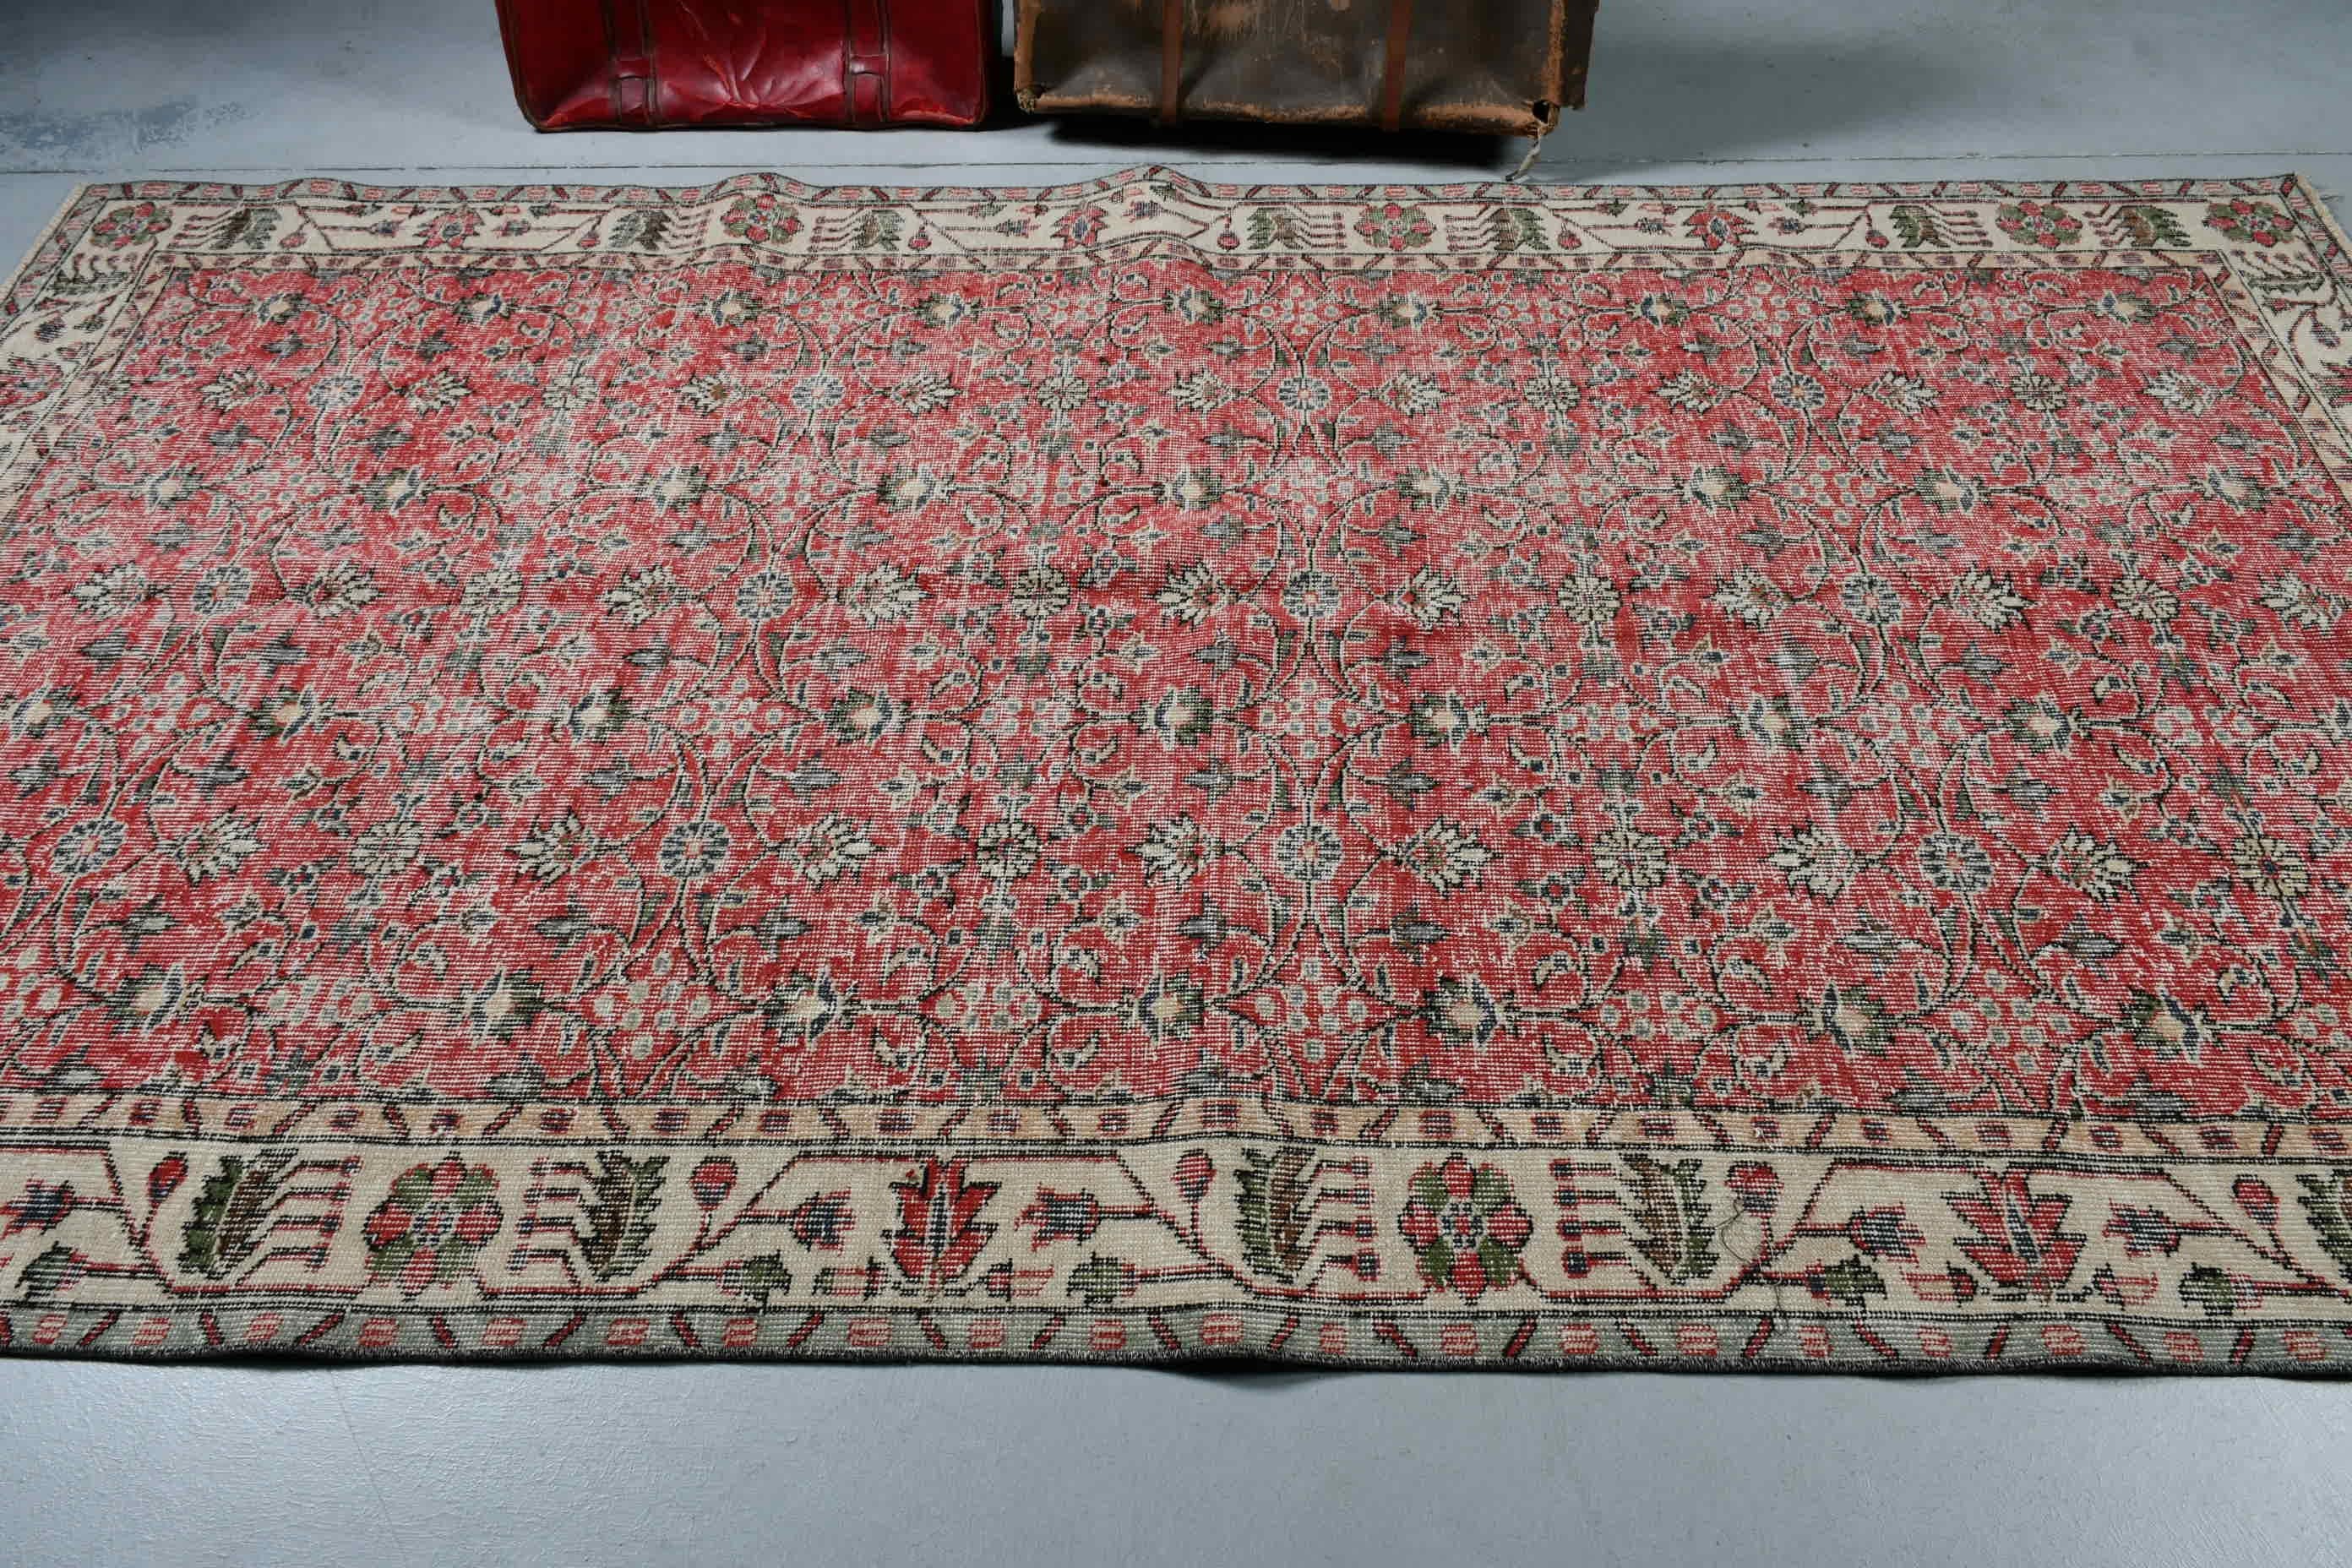 Dining Room Rug, Custom Rug, Turkish Rug, 5.2x9.3 ft Large Rug, Red Antique Rug, Oriental Rug, Vintage Rug, Living Room Rug